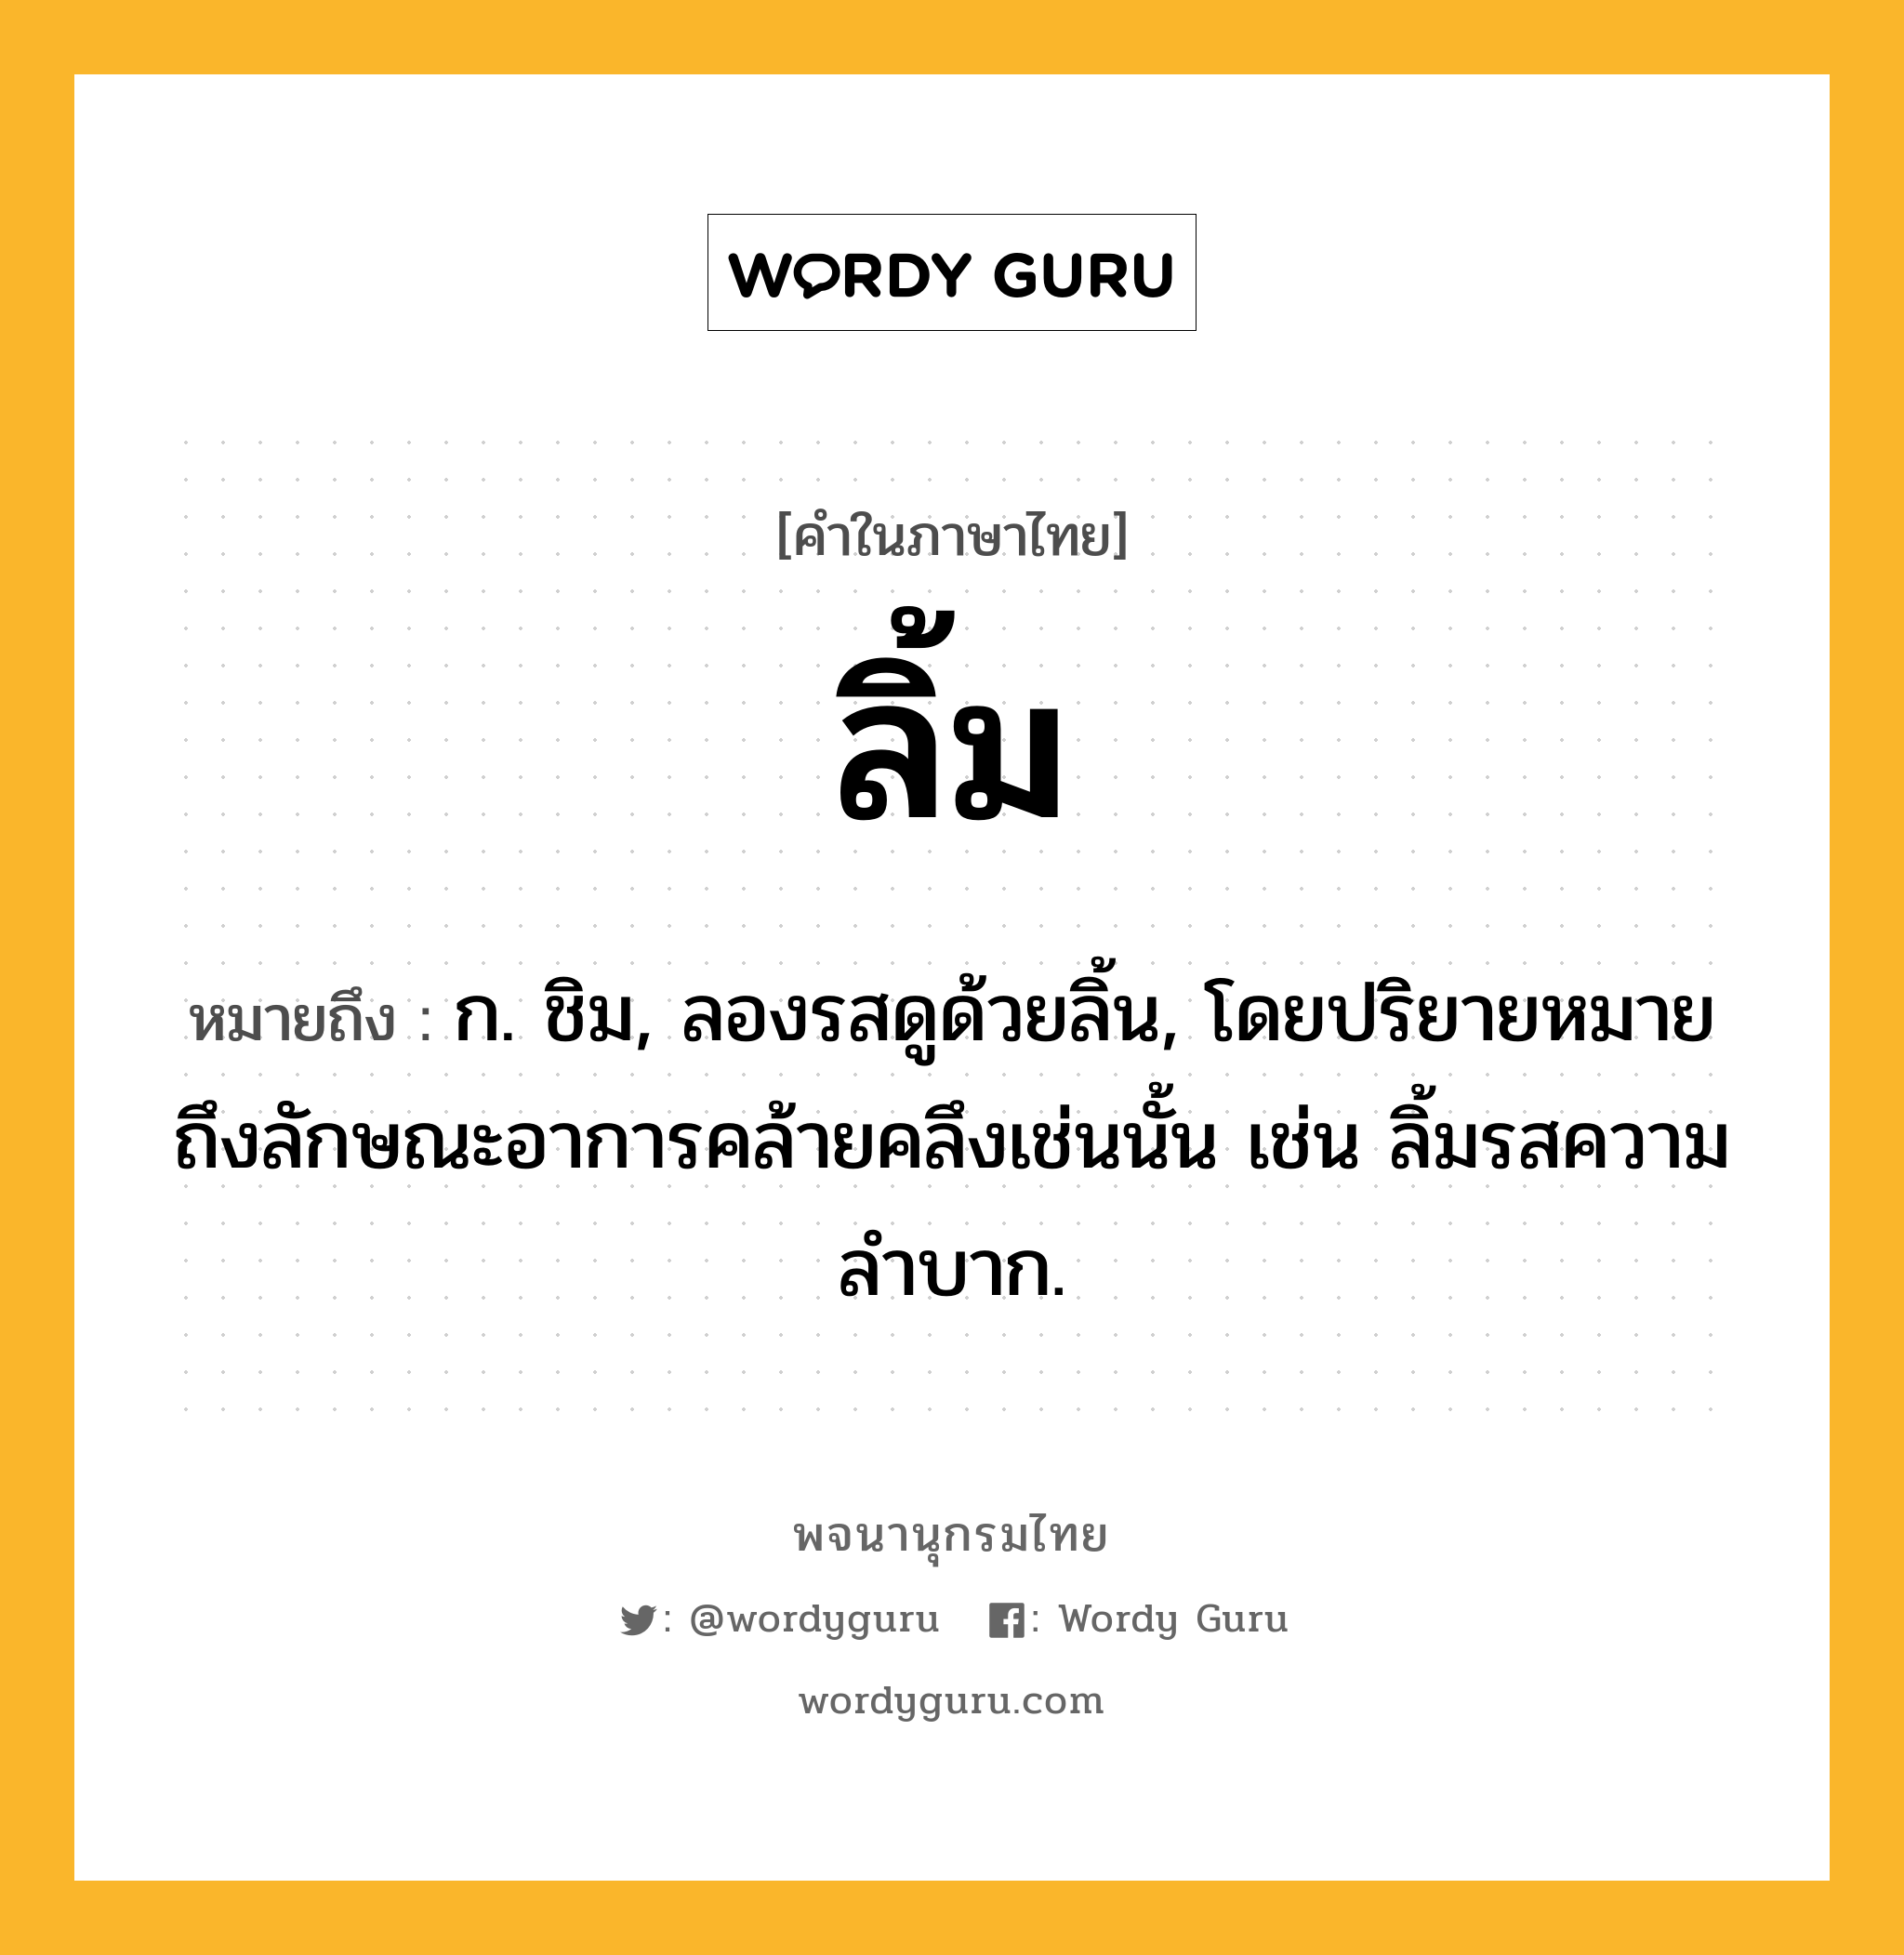 ลิ้ม ความหมาย หมายถึงอะไร?, คำในภาษาไทย ลิ้ม หมายถึง ก. ชิม, ลองรสดูด้วยลิ้น, โดยปริยายหมายถึงลักษณะอาการคล้ายคลึงเช่นนั้น เช่น ลิ้มรสความลําบาก.